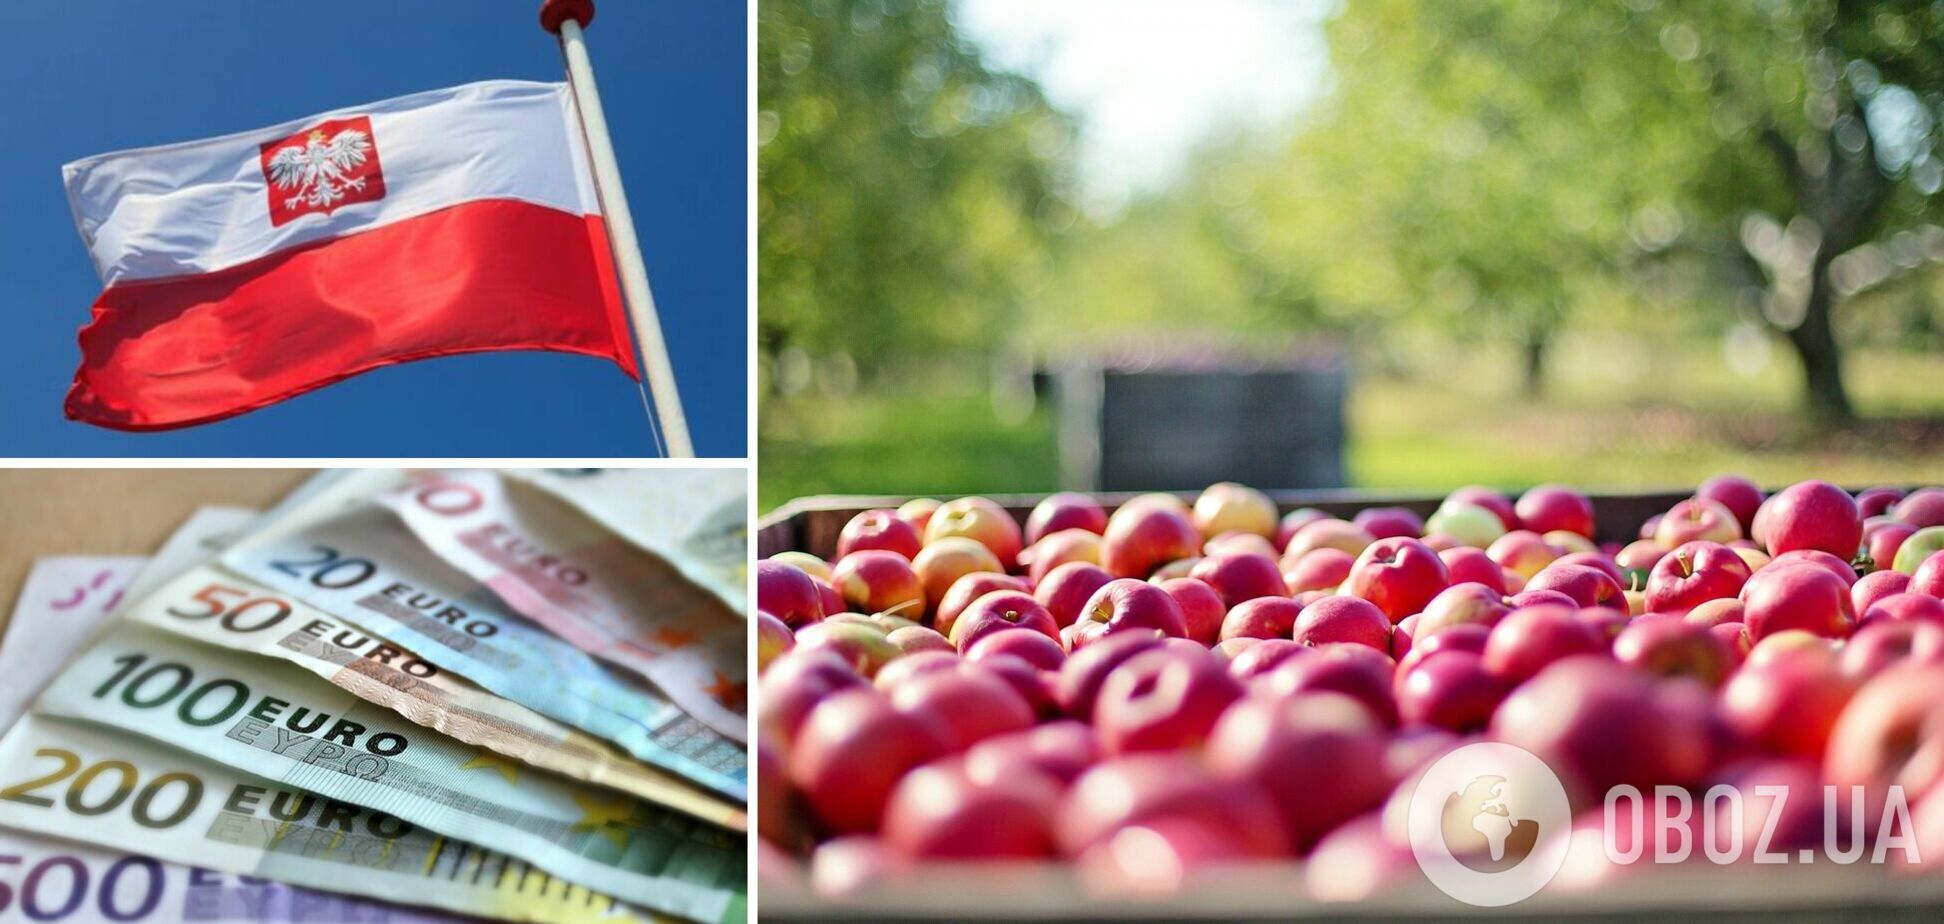 Сбор яблок в Польше оказался под угрозой из-за дефицита заробитчан 